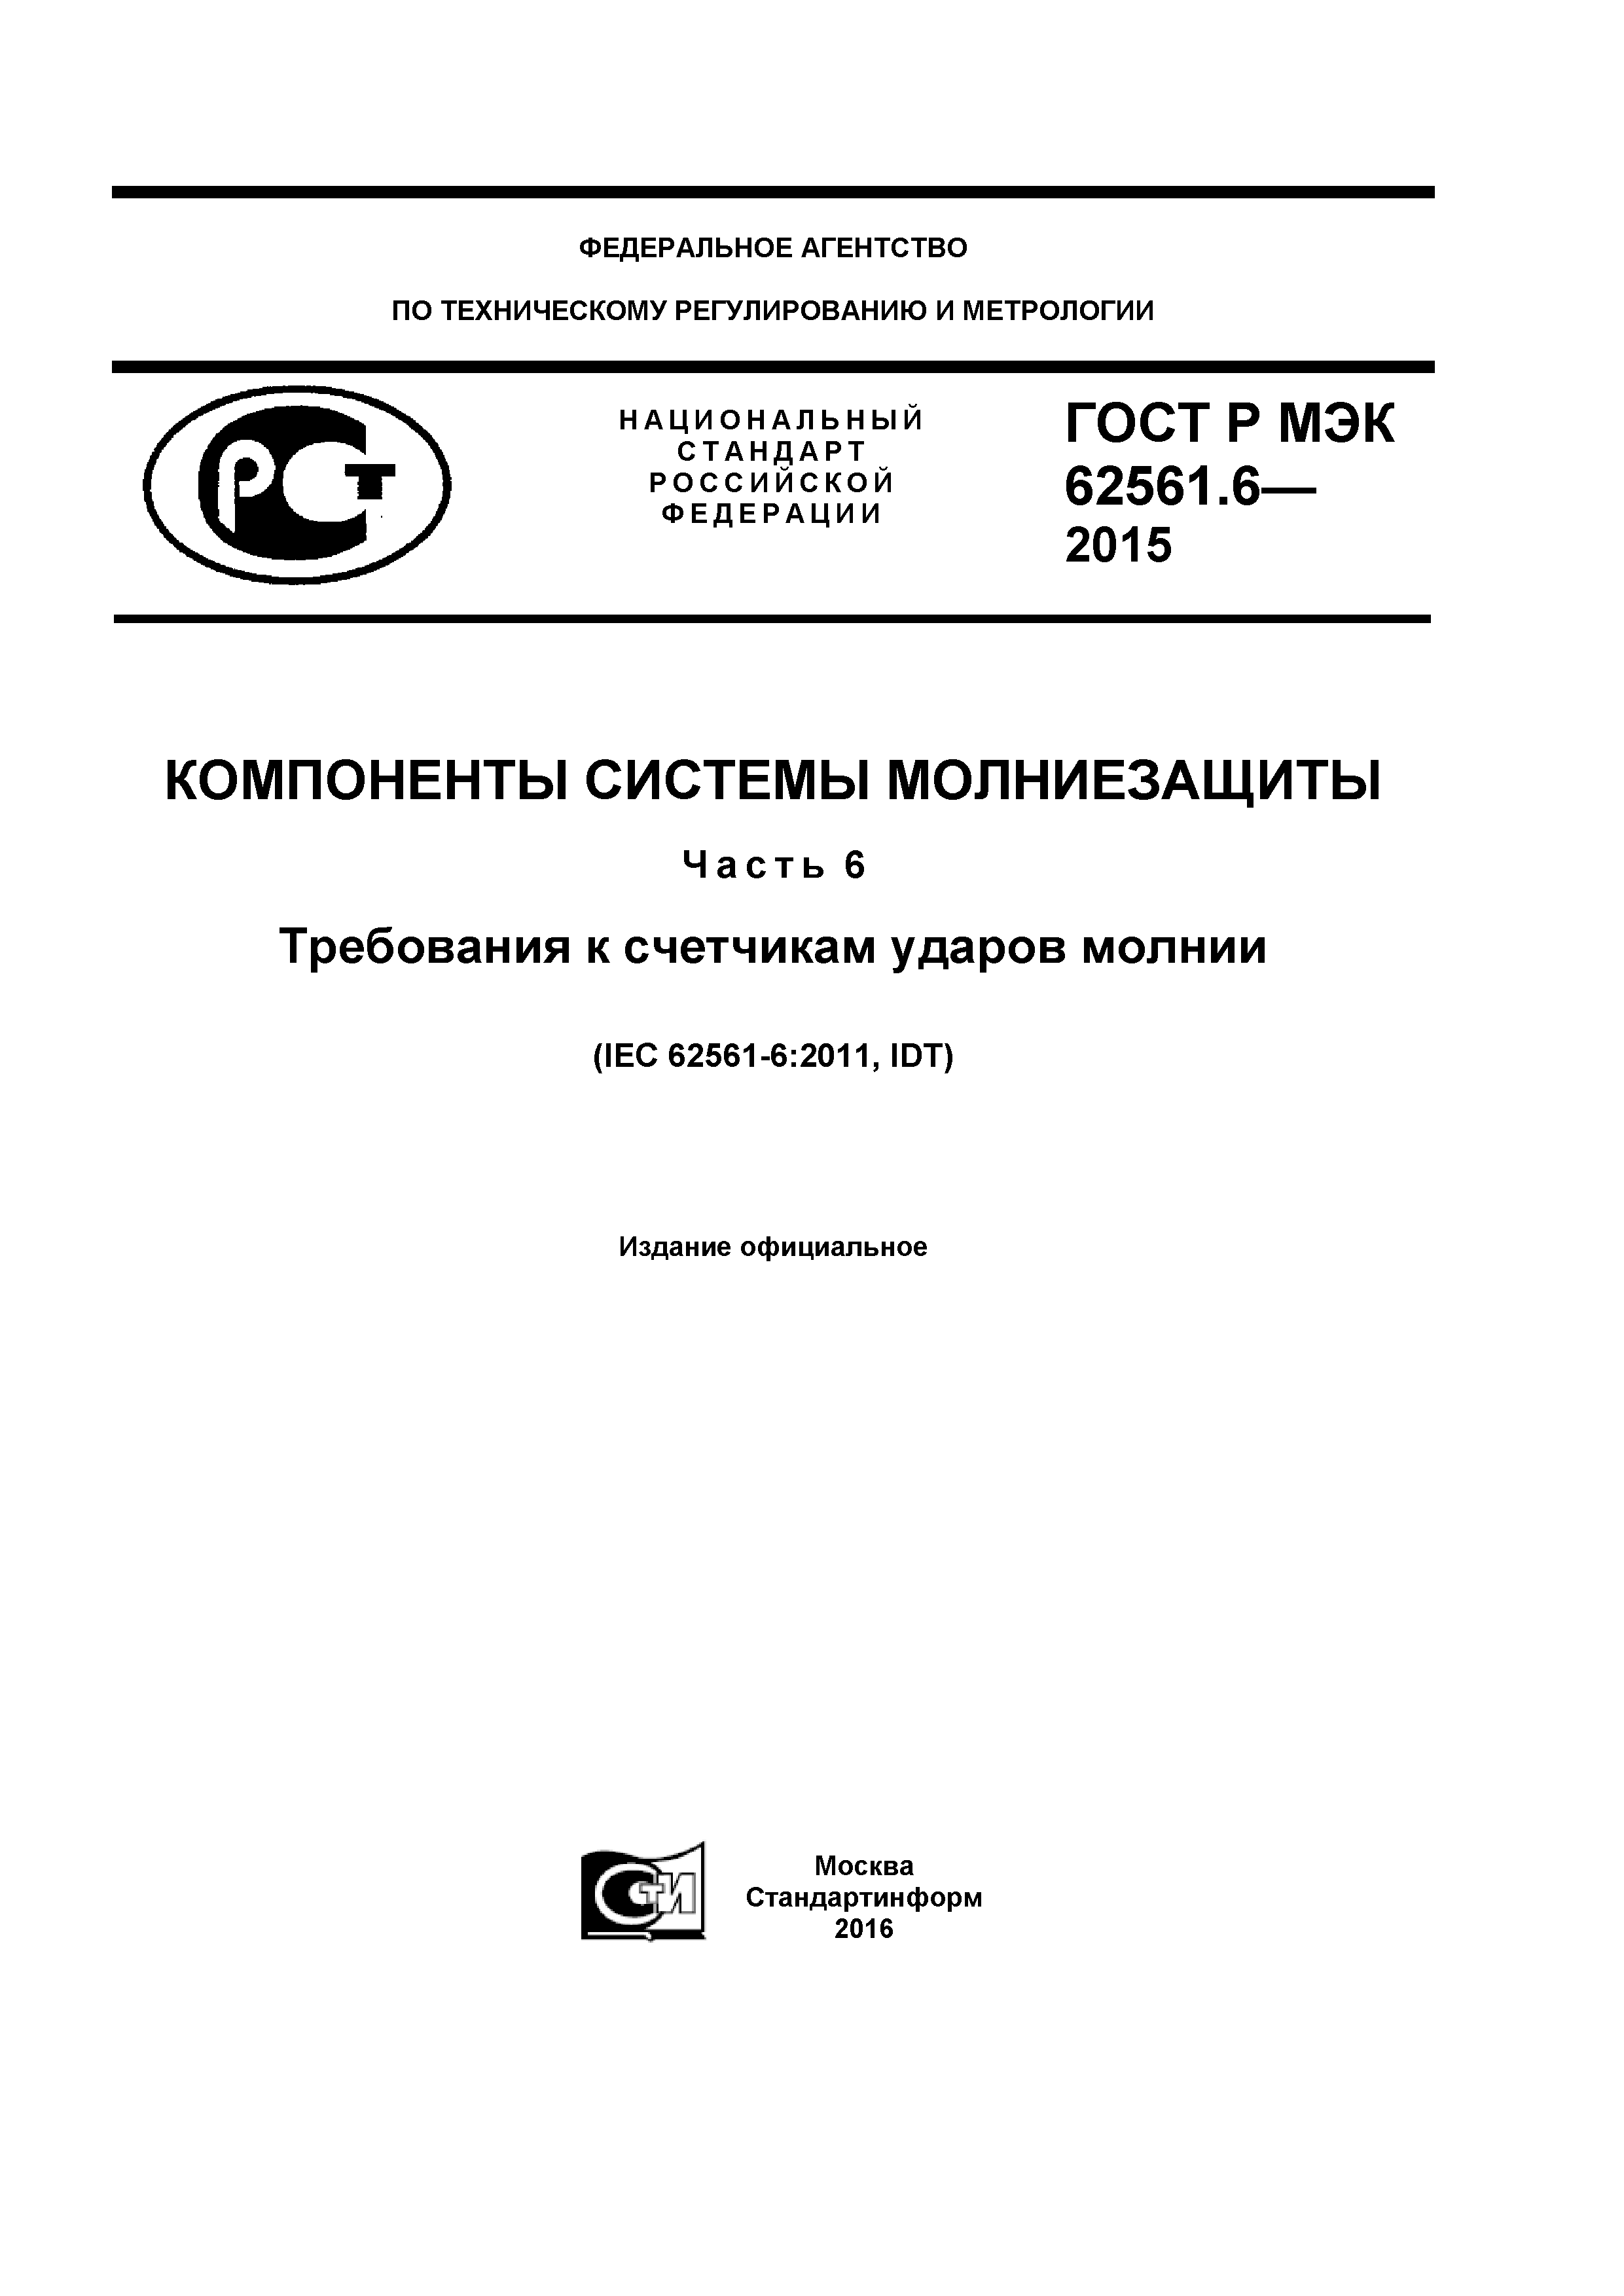 ГОСТ Р МЭК 62561.6-2015